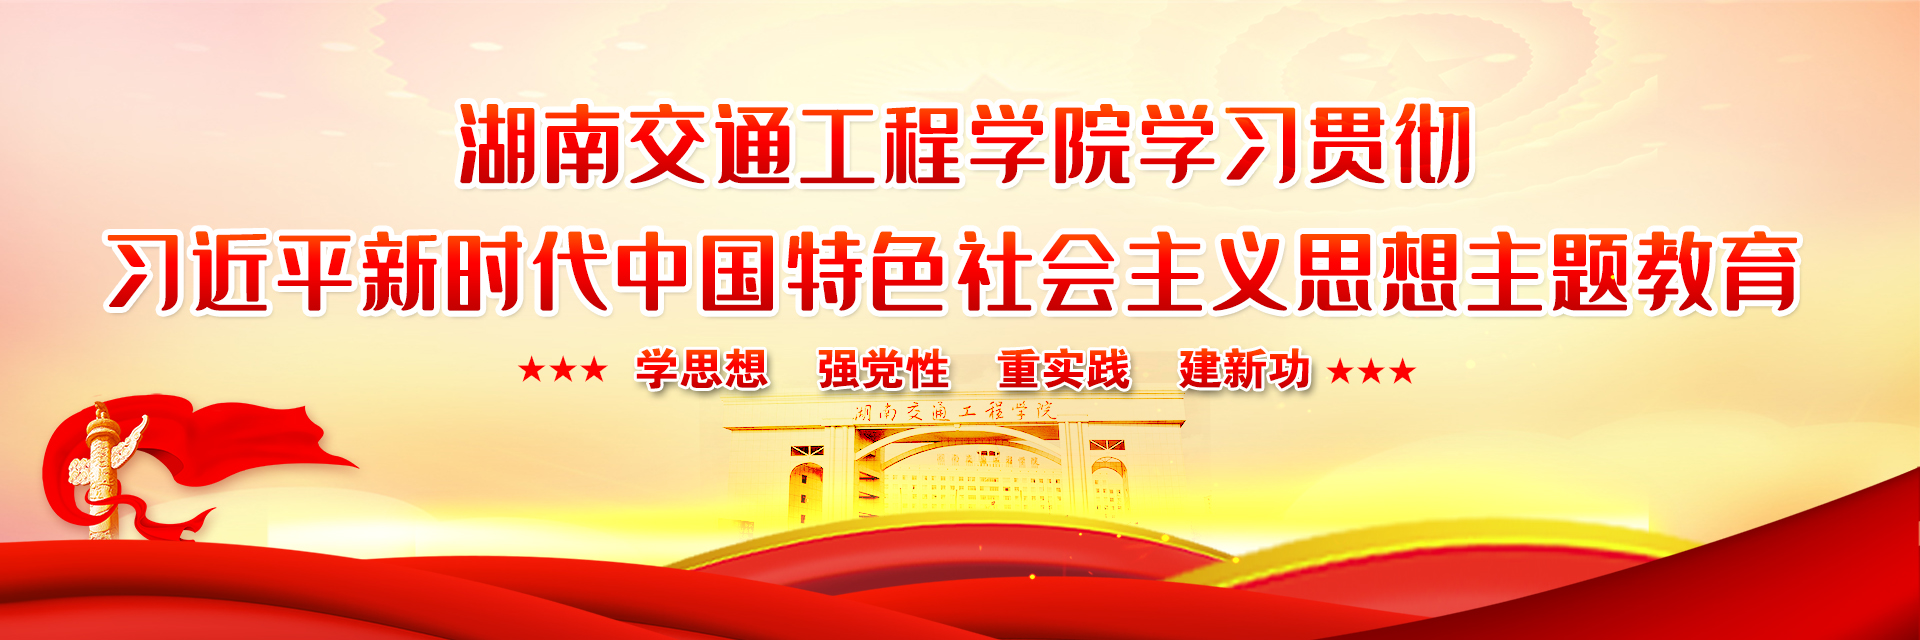 湖南交通工程学院贯彻习近平新时代中国特色社会主义思想主题教育